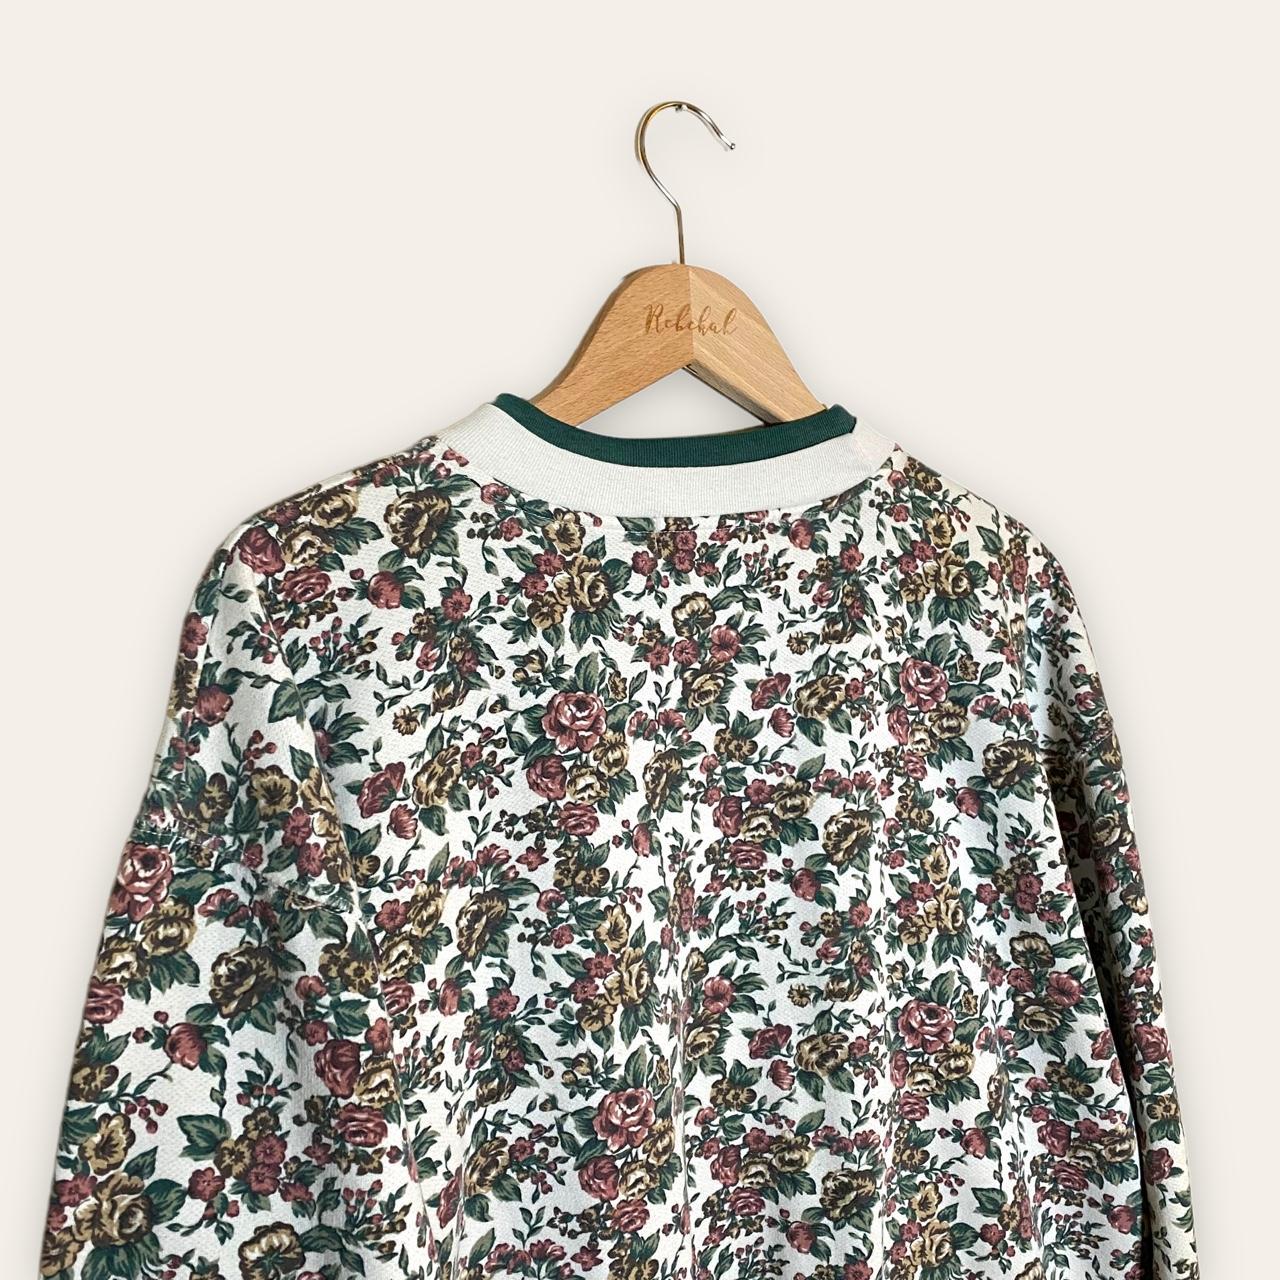 Product Image 3 - vintage floral sweatshirt crewneck grandma